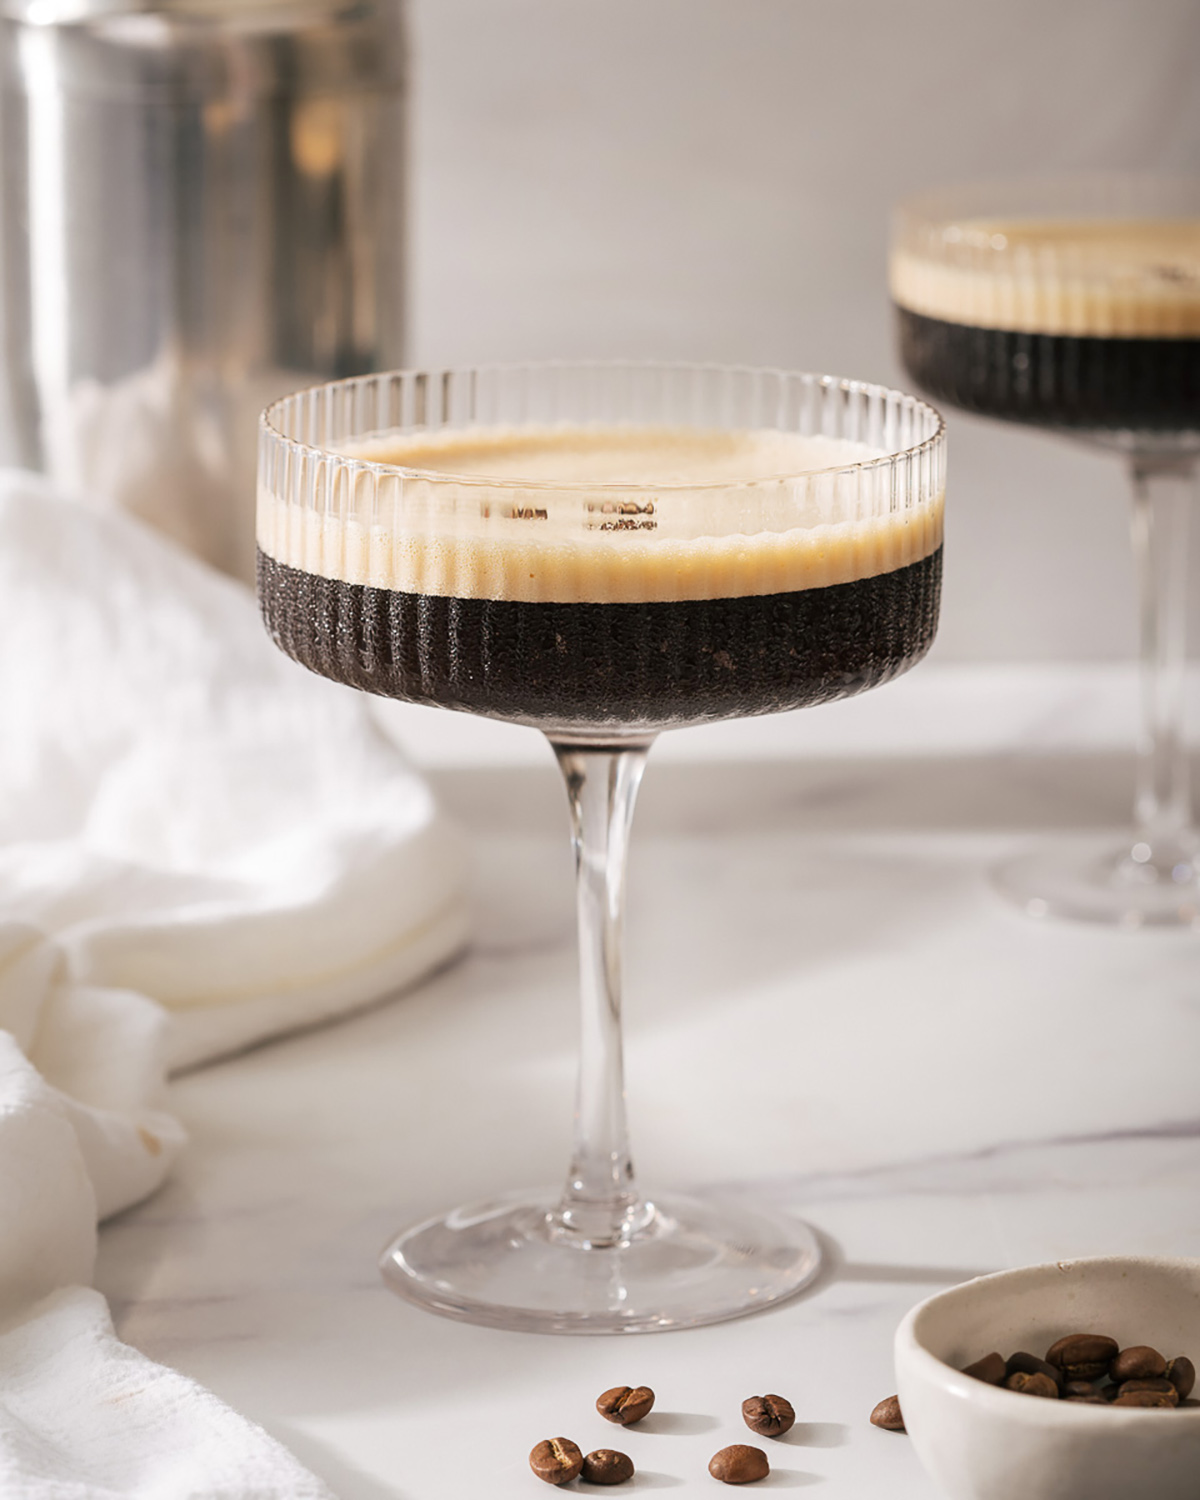 The Best Espresso Martini – Takes Two Eggs